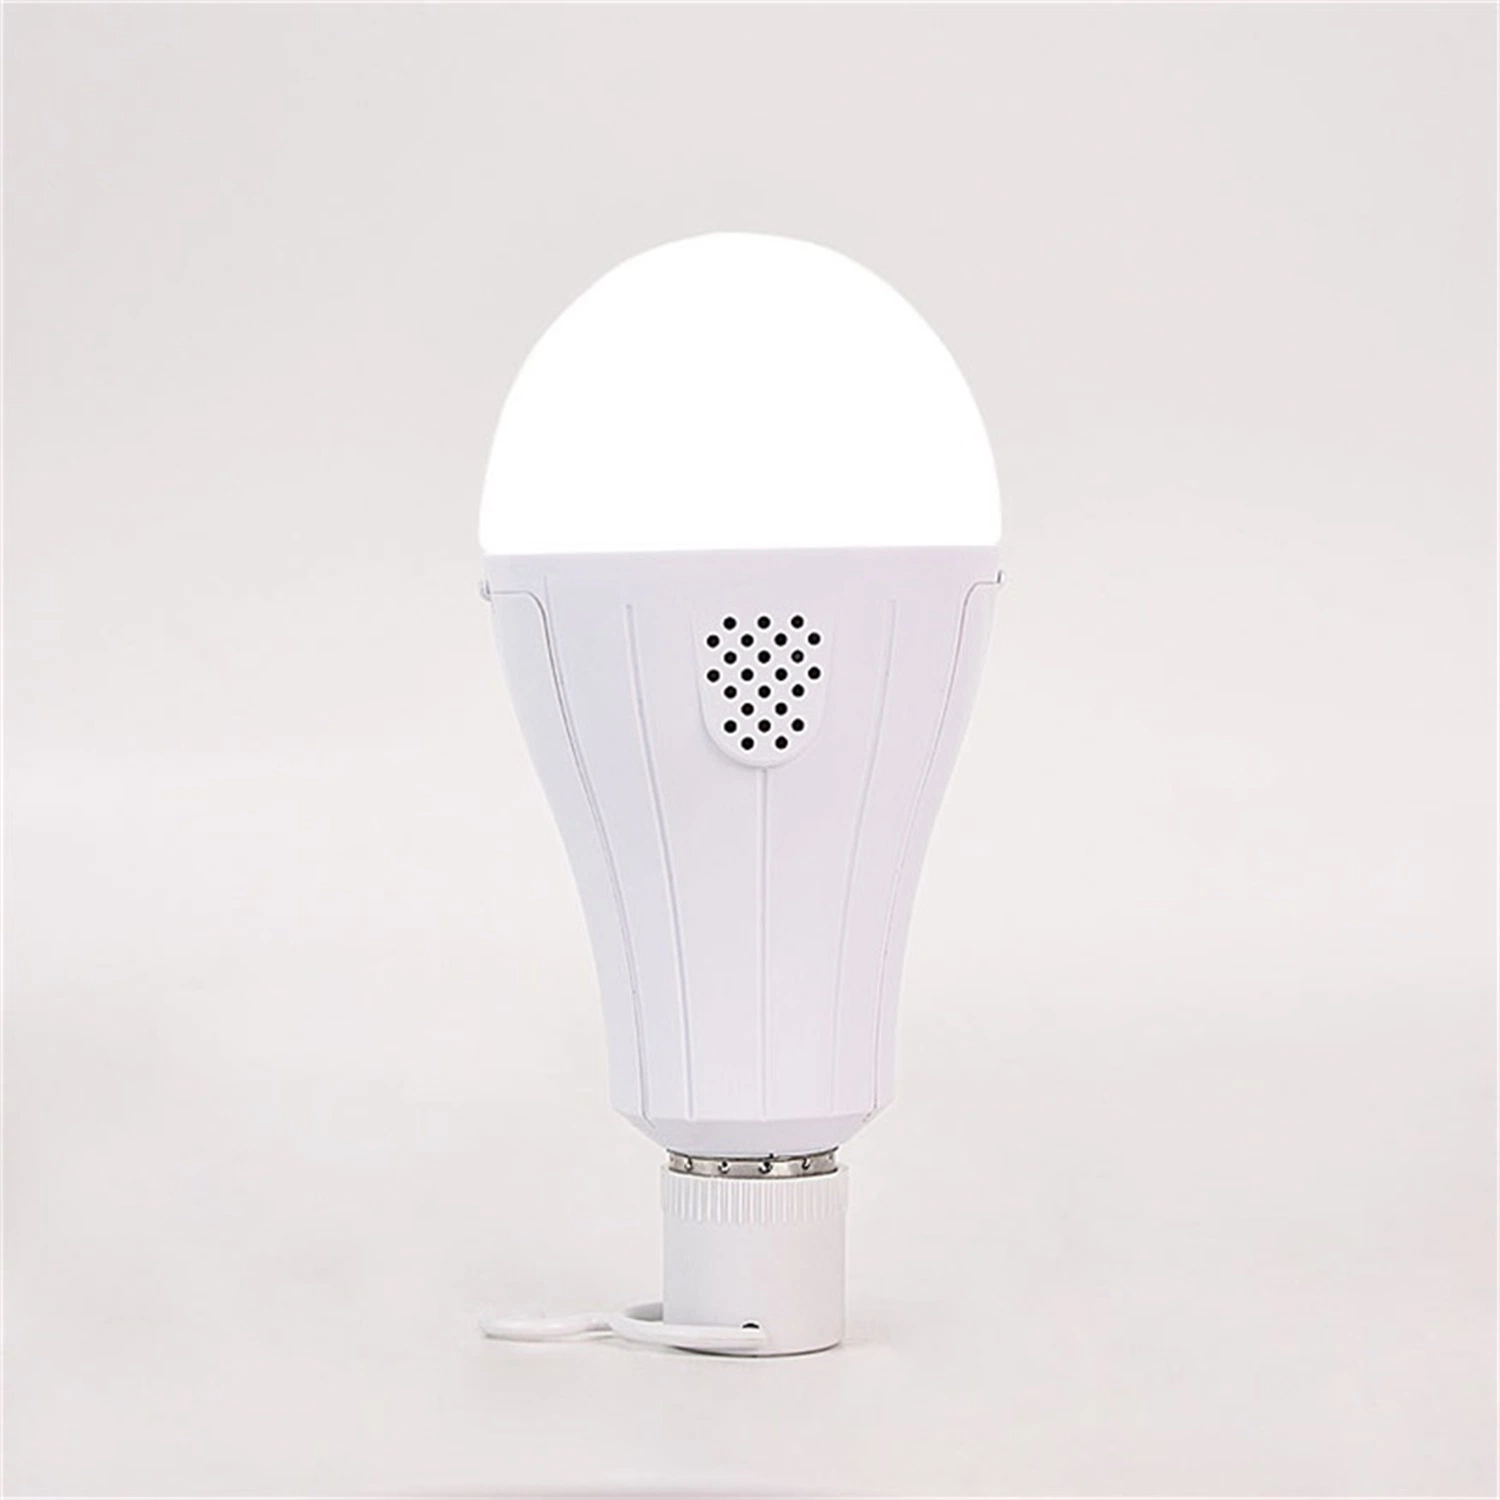 Lampe à induction d'urgence LED à ampoule de capteur rechargeable à double batterie